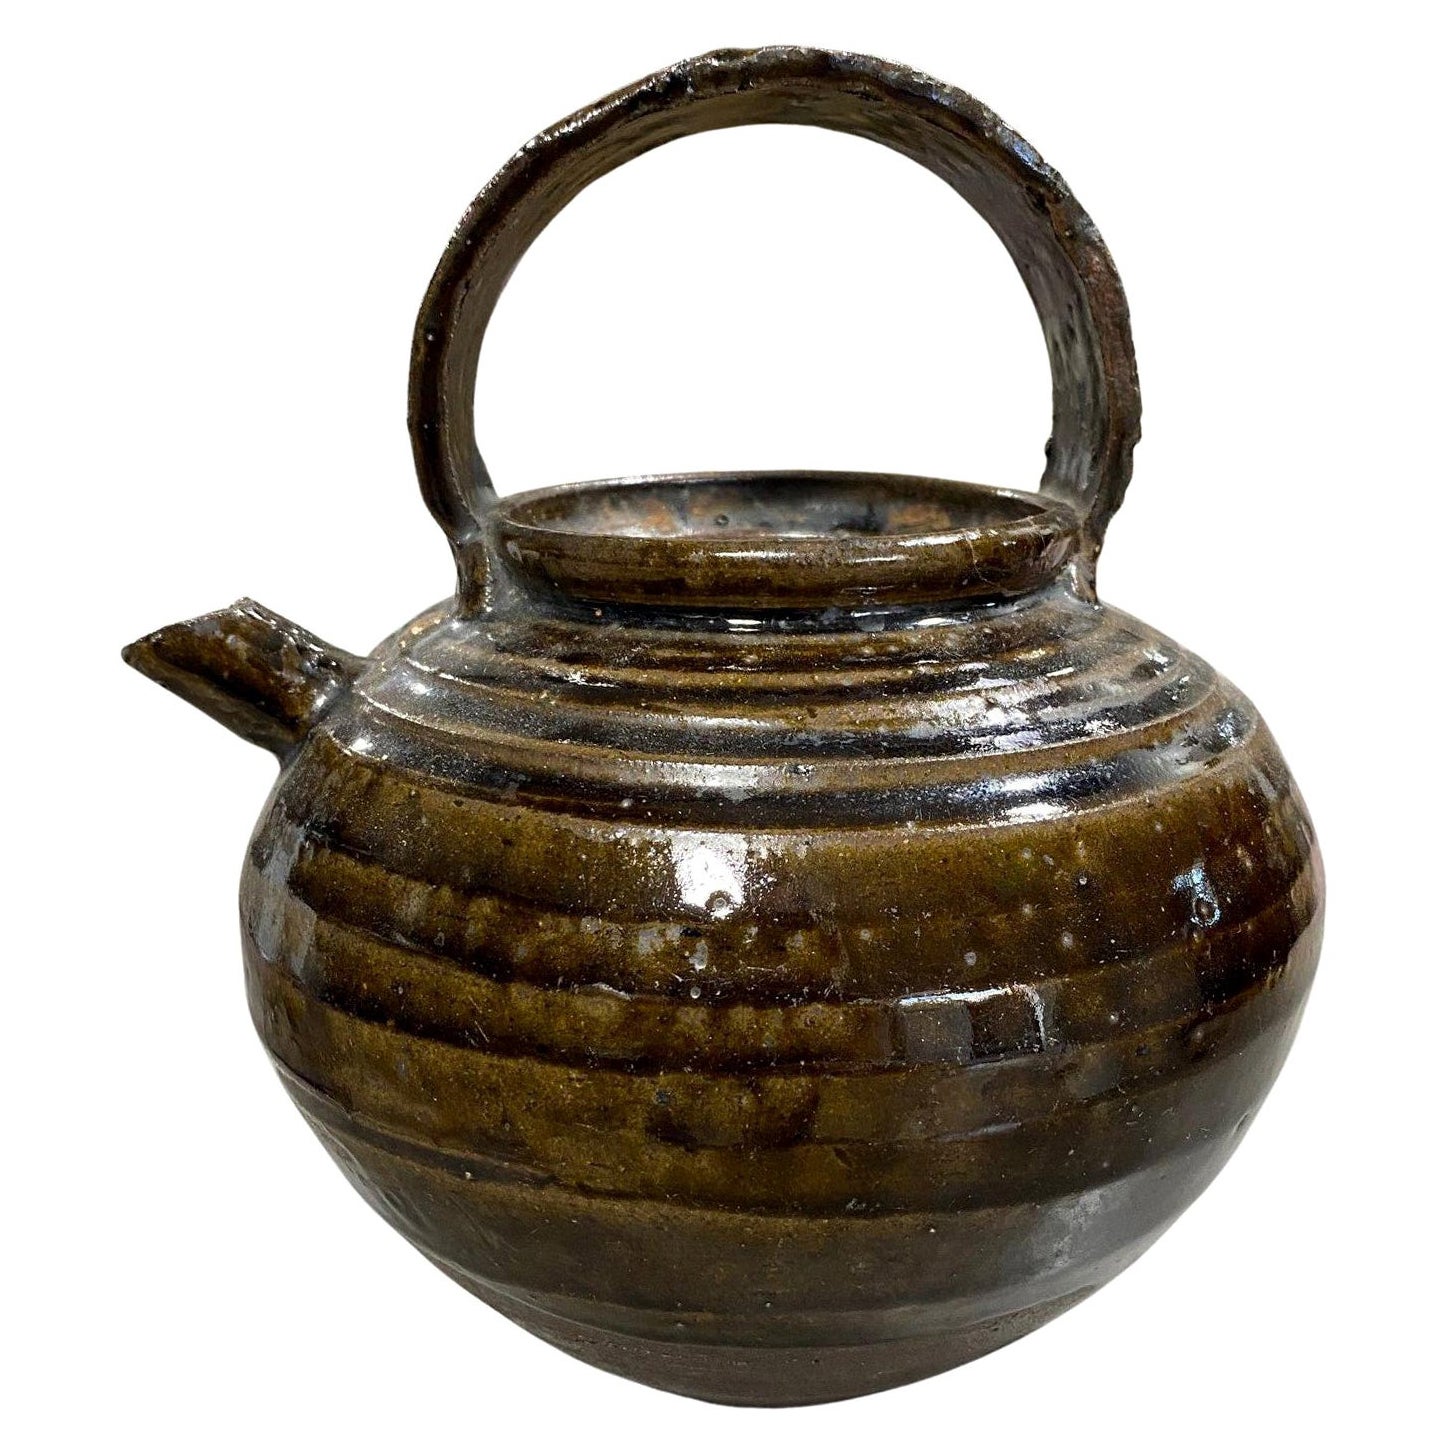 Korean, Joseon Dynasty Brown Green Glazed Stoneware Pottery Ceramic Teapot